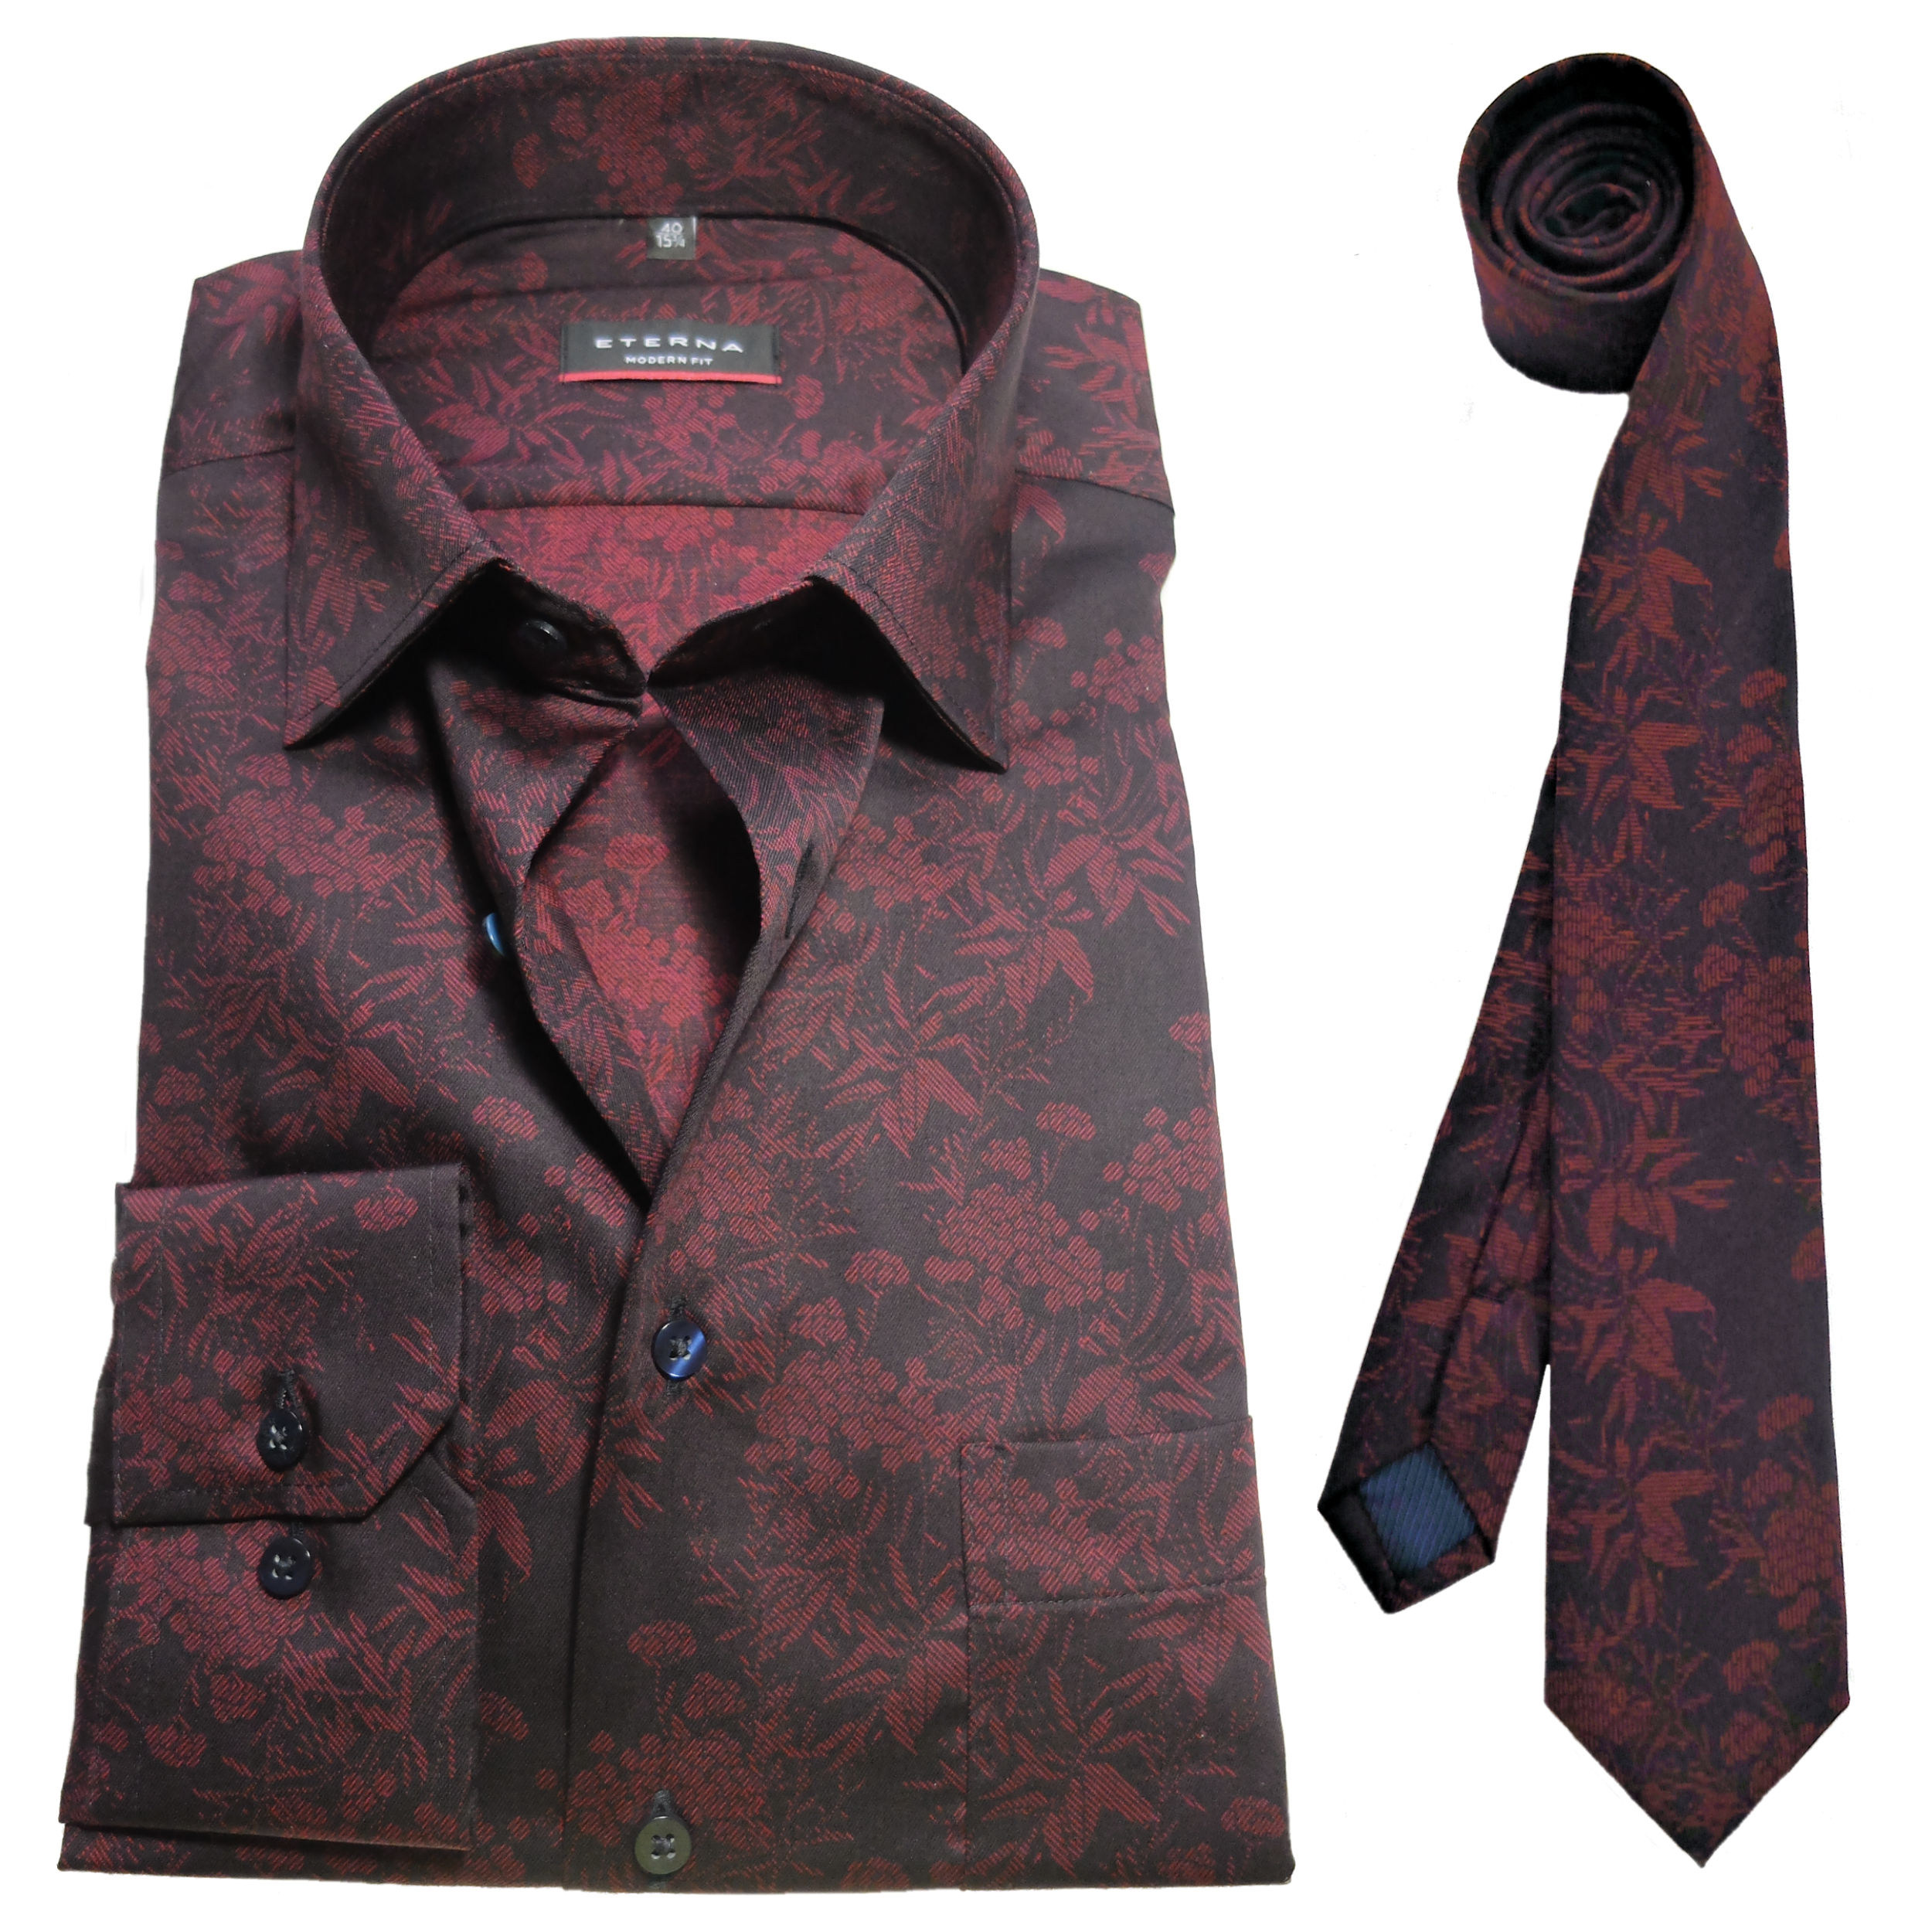 eterna Modern Fit Langarmhemd + Krawatte schwarz dunkelrot Floralmotiv -  Hochwertige Herrenmode führender Marken zu fairen